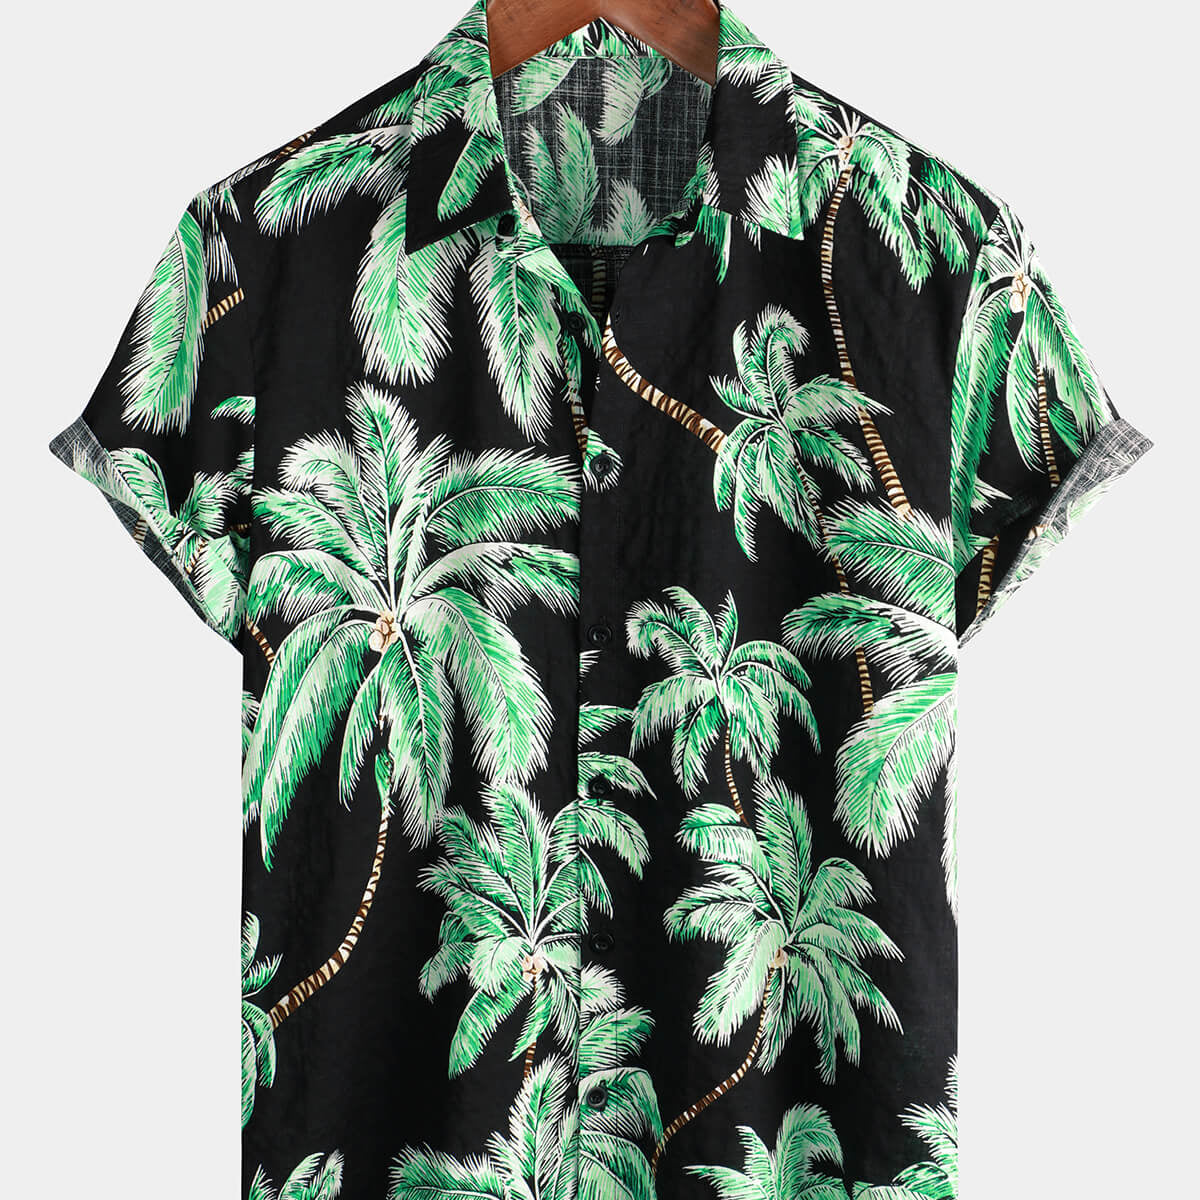 Camisa de manga corta con botones tropicales para hombre, color negro, con palmeras, playa, verano, vacaciones hawaianas